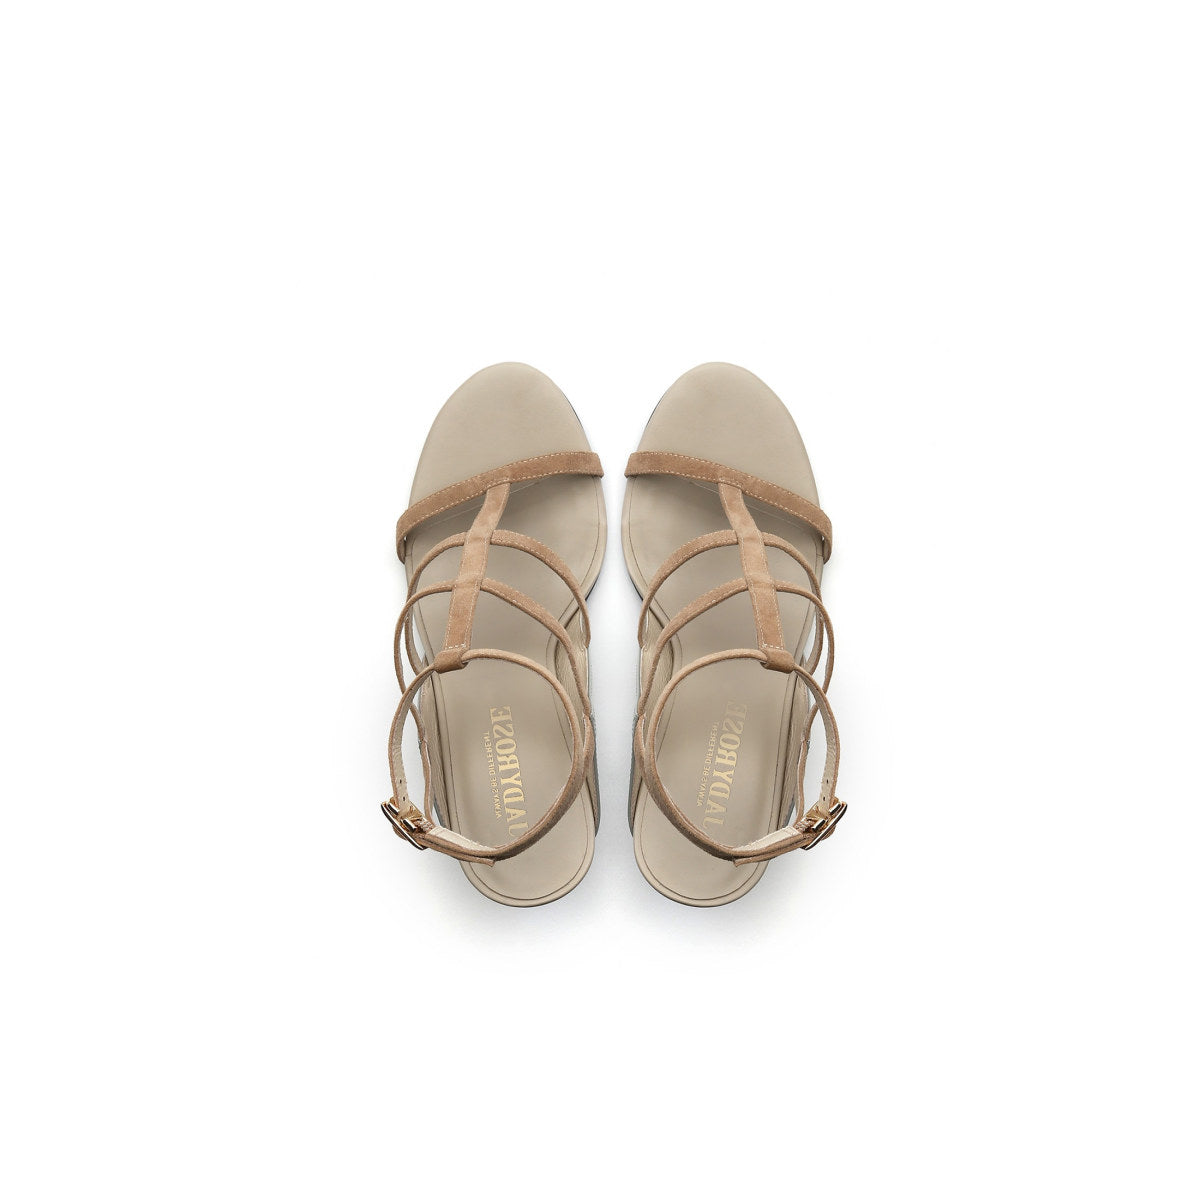 Open Toe Faux Leather Strip Accent Apricot Roman Sandals